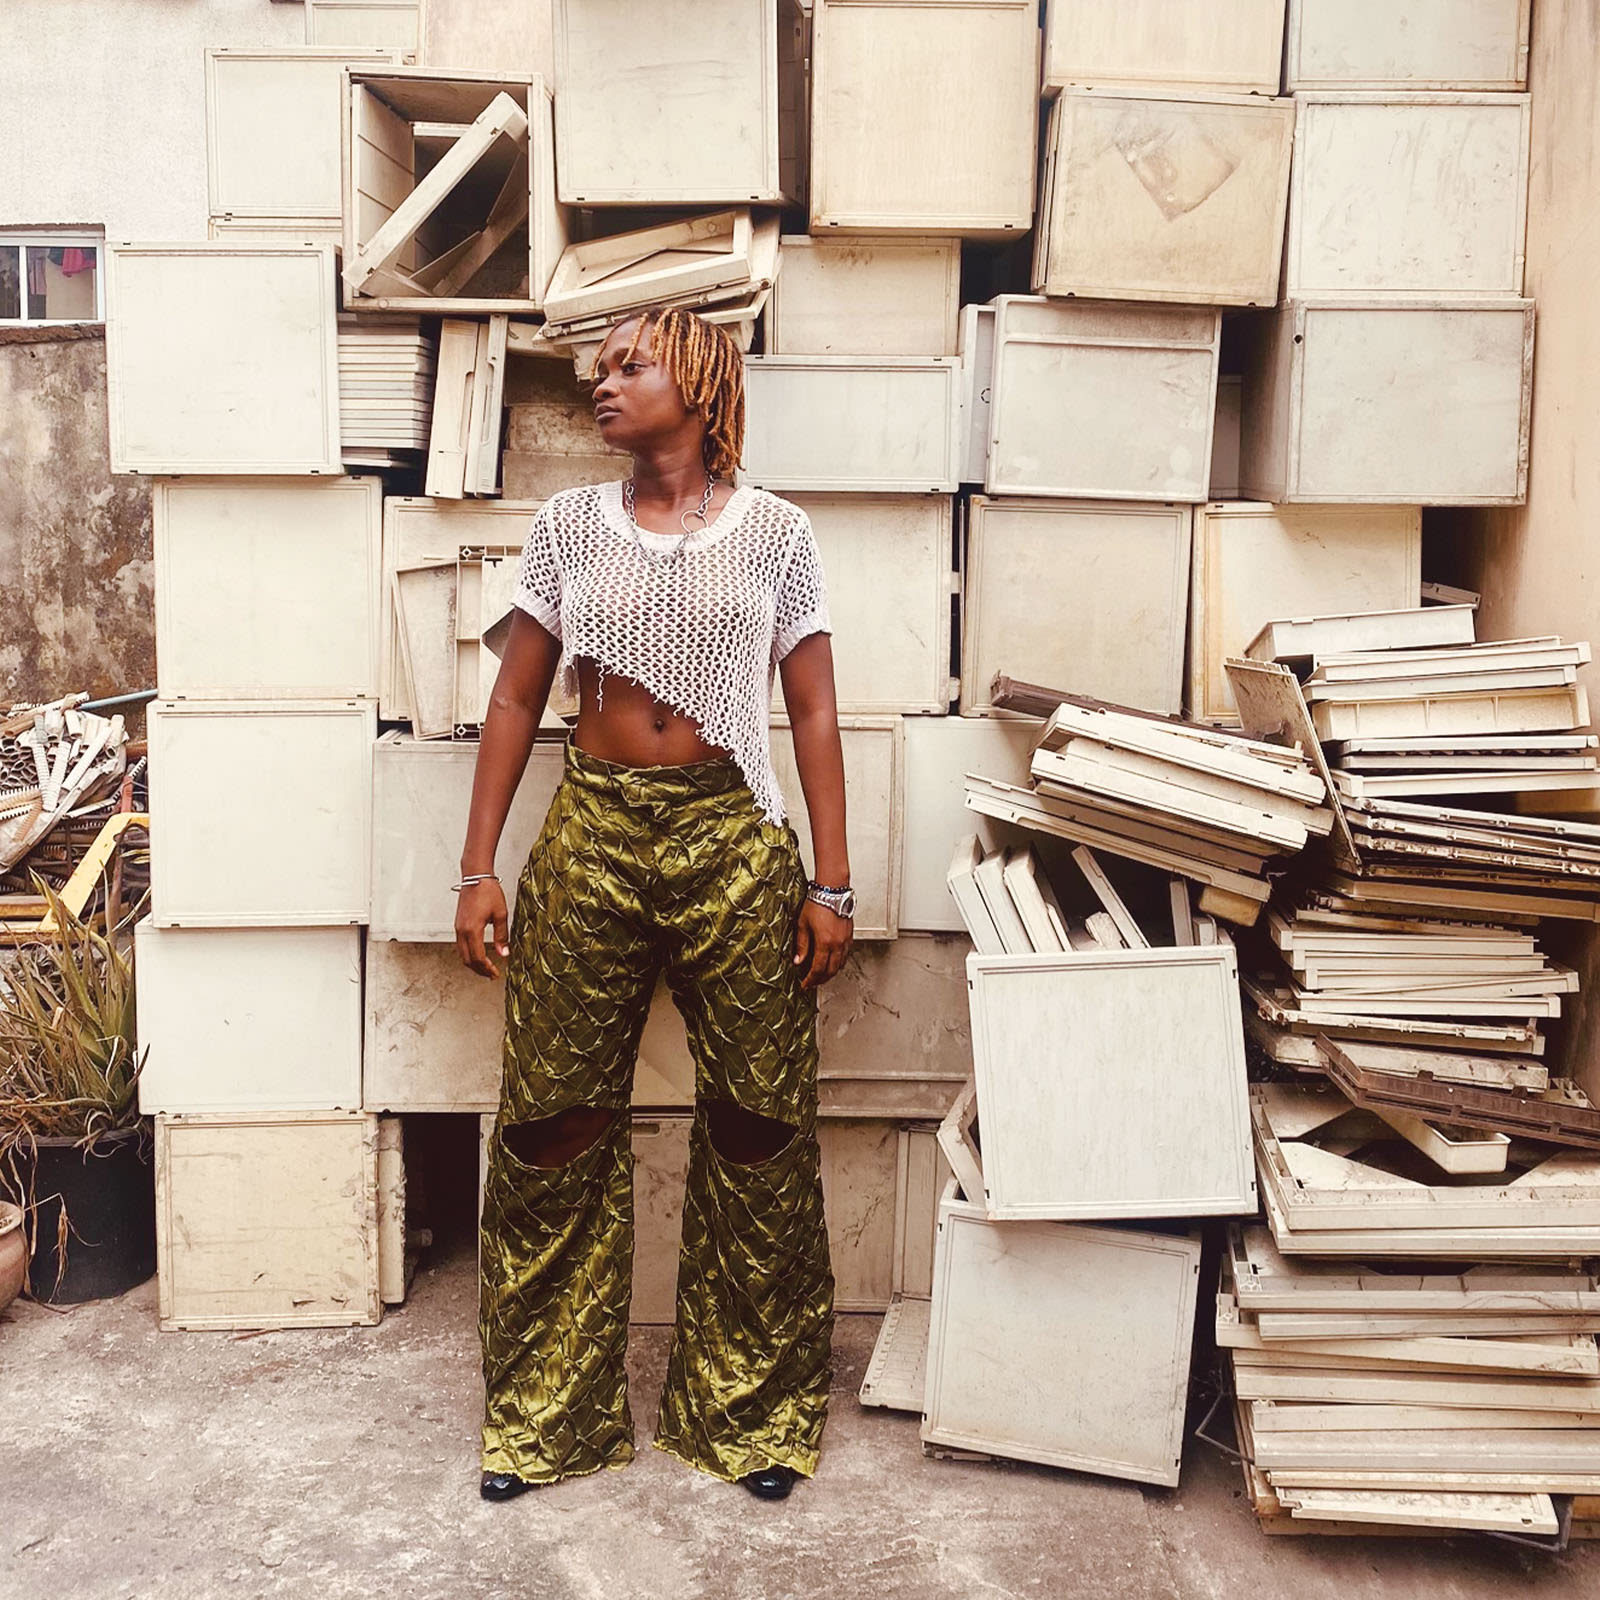 Vangei: Nigeria's genderless fashion label